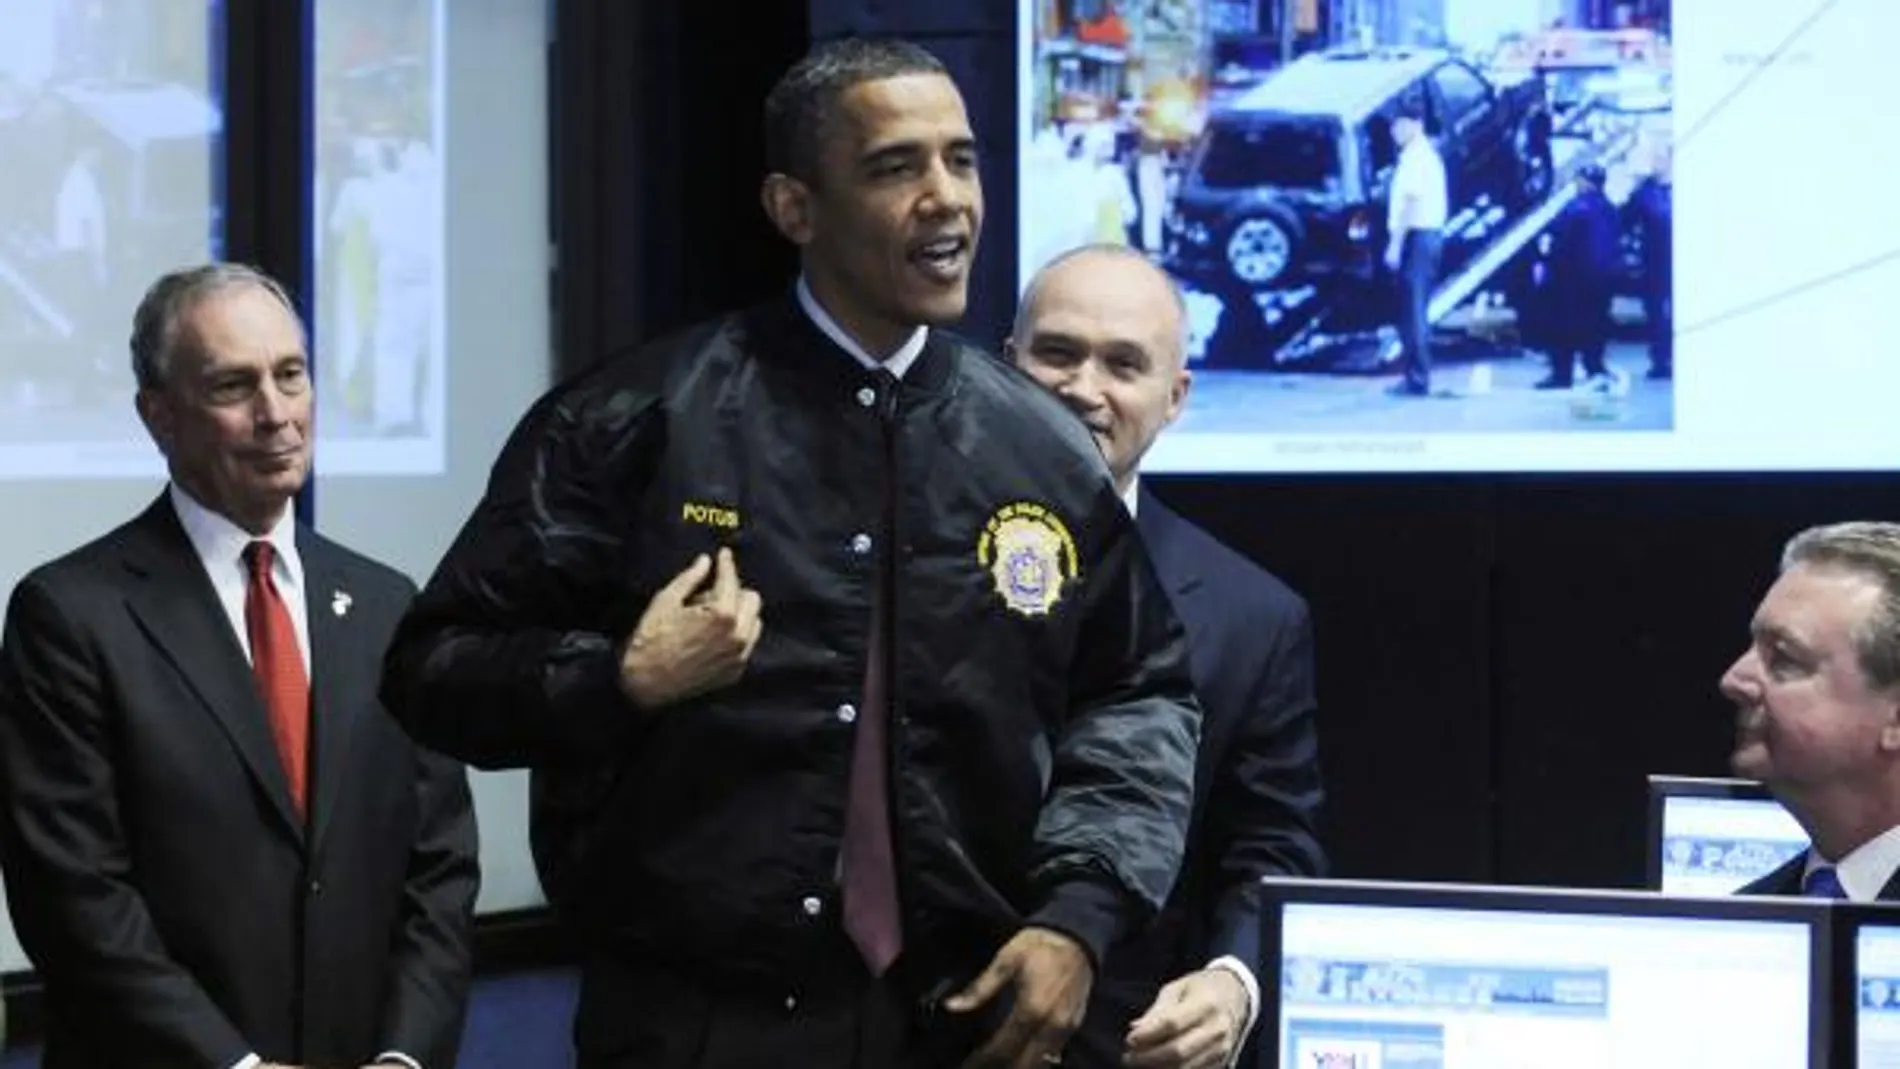 Obama viste una chaqueta de la Policía de Nueva York, durante una visita al centro de control de la Policía neoyorquina